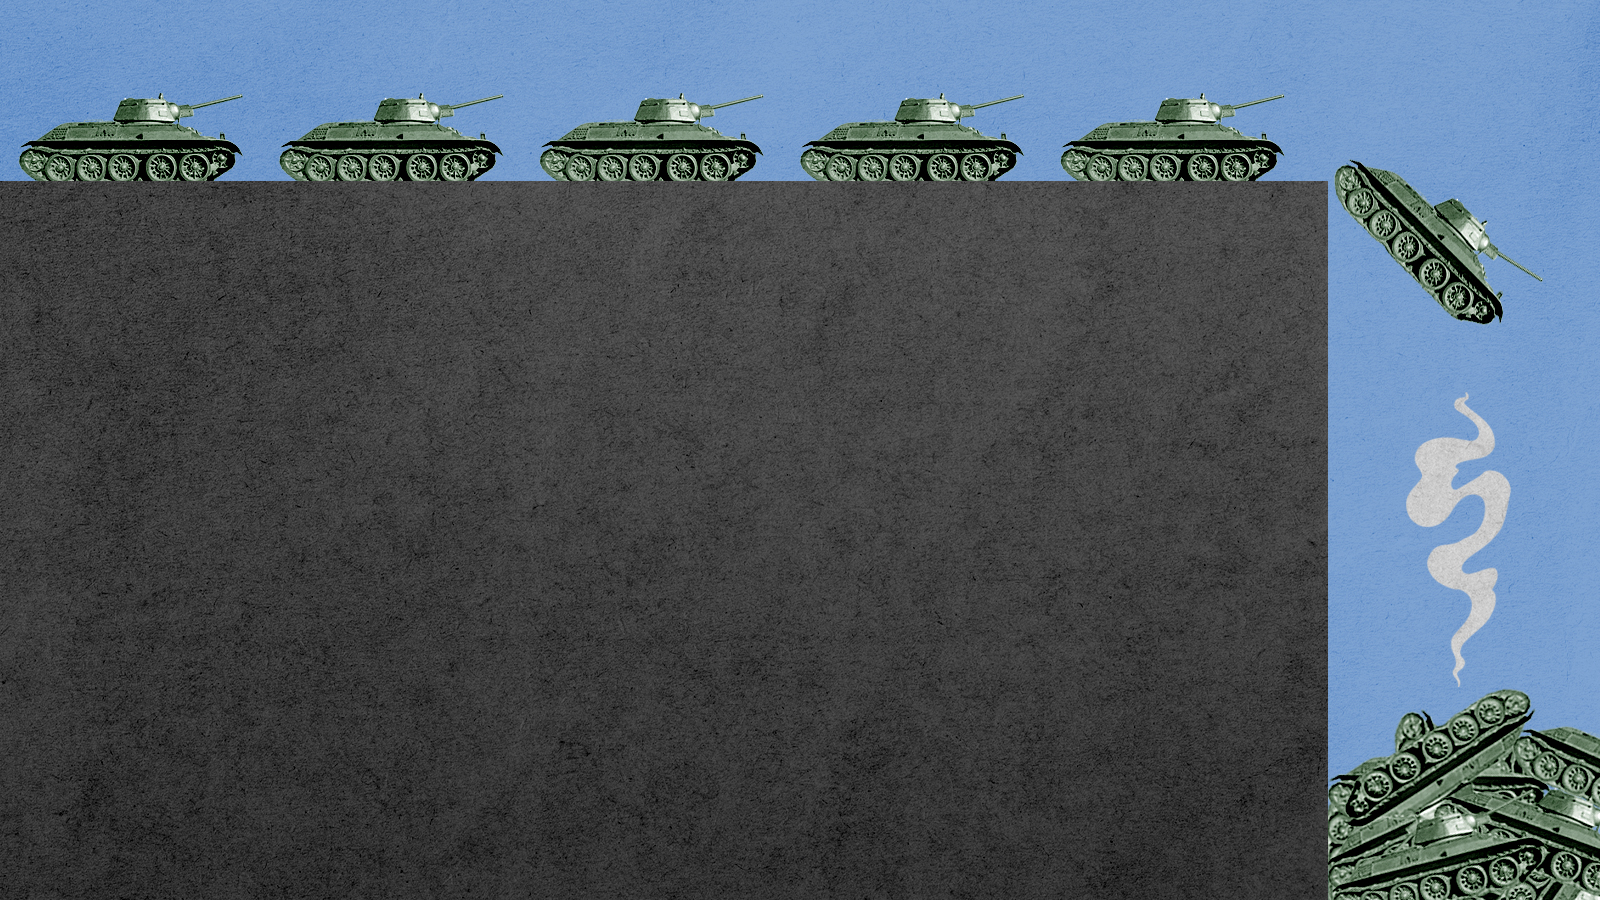 Tanks.